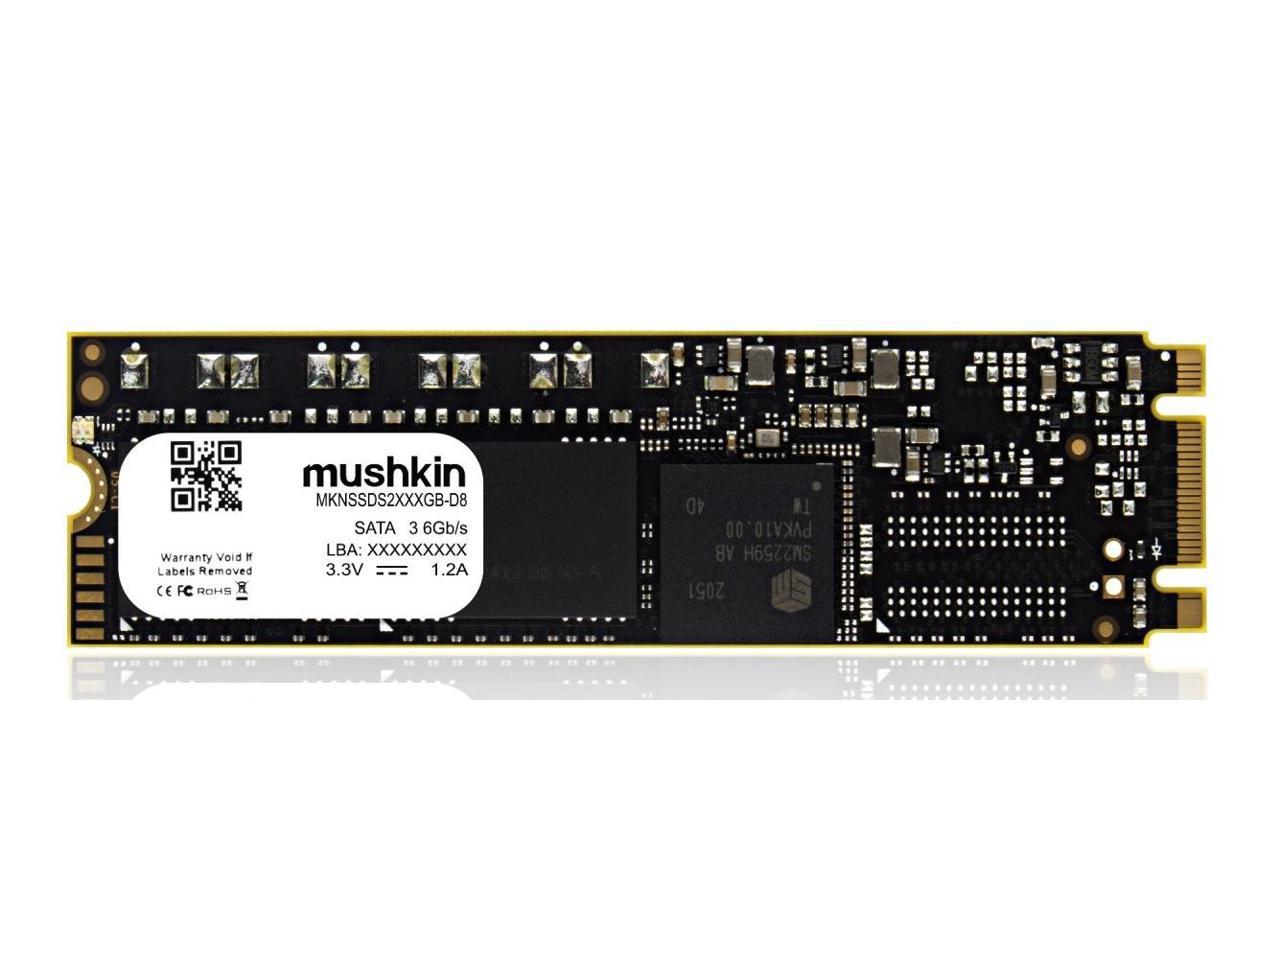 Mushkin Enhanced -128GB Solid State Drive - Source 2 - M.2-3D -SATA-III 6Gb/s-Model-MKNSSDS2128GB-D8